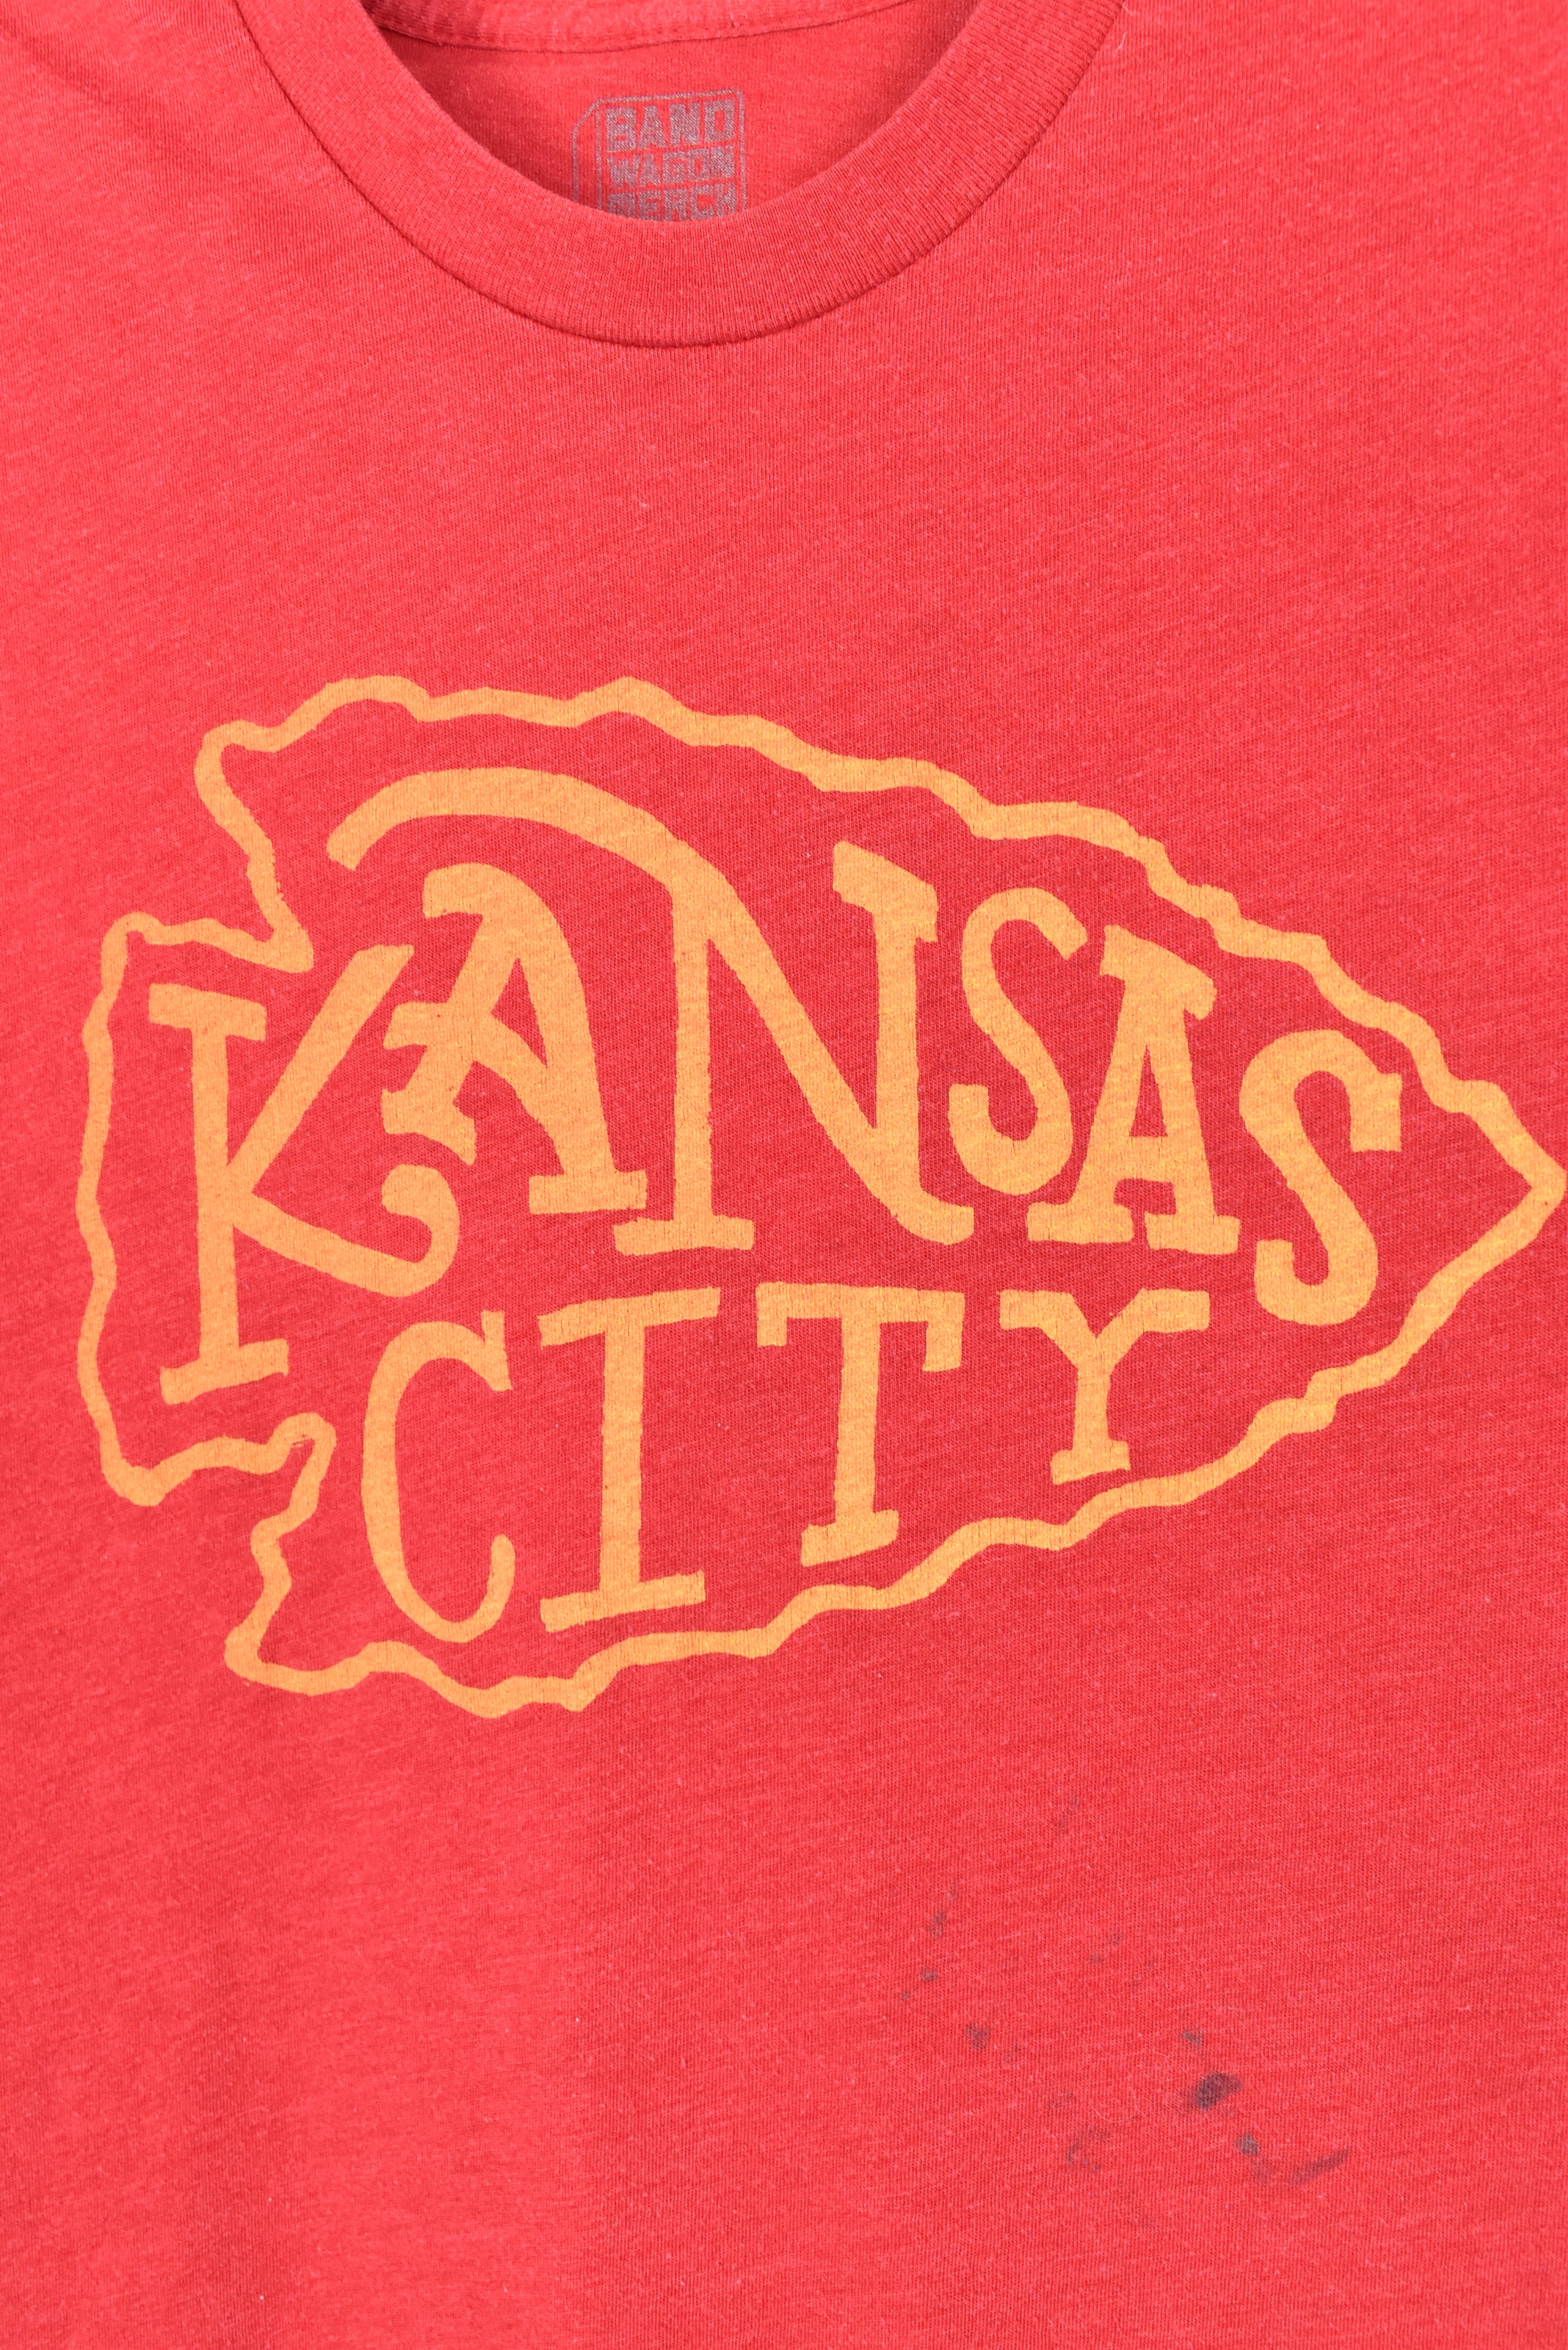 MODERN NFL KANSAS CITY CHIEFS RED T-SHIRT | XS PRO SPORT